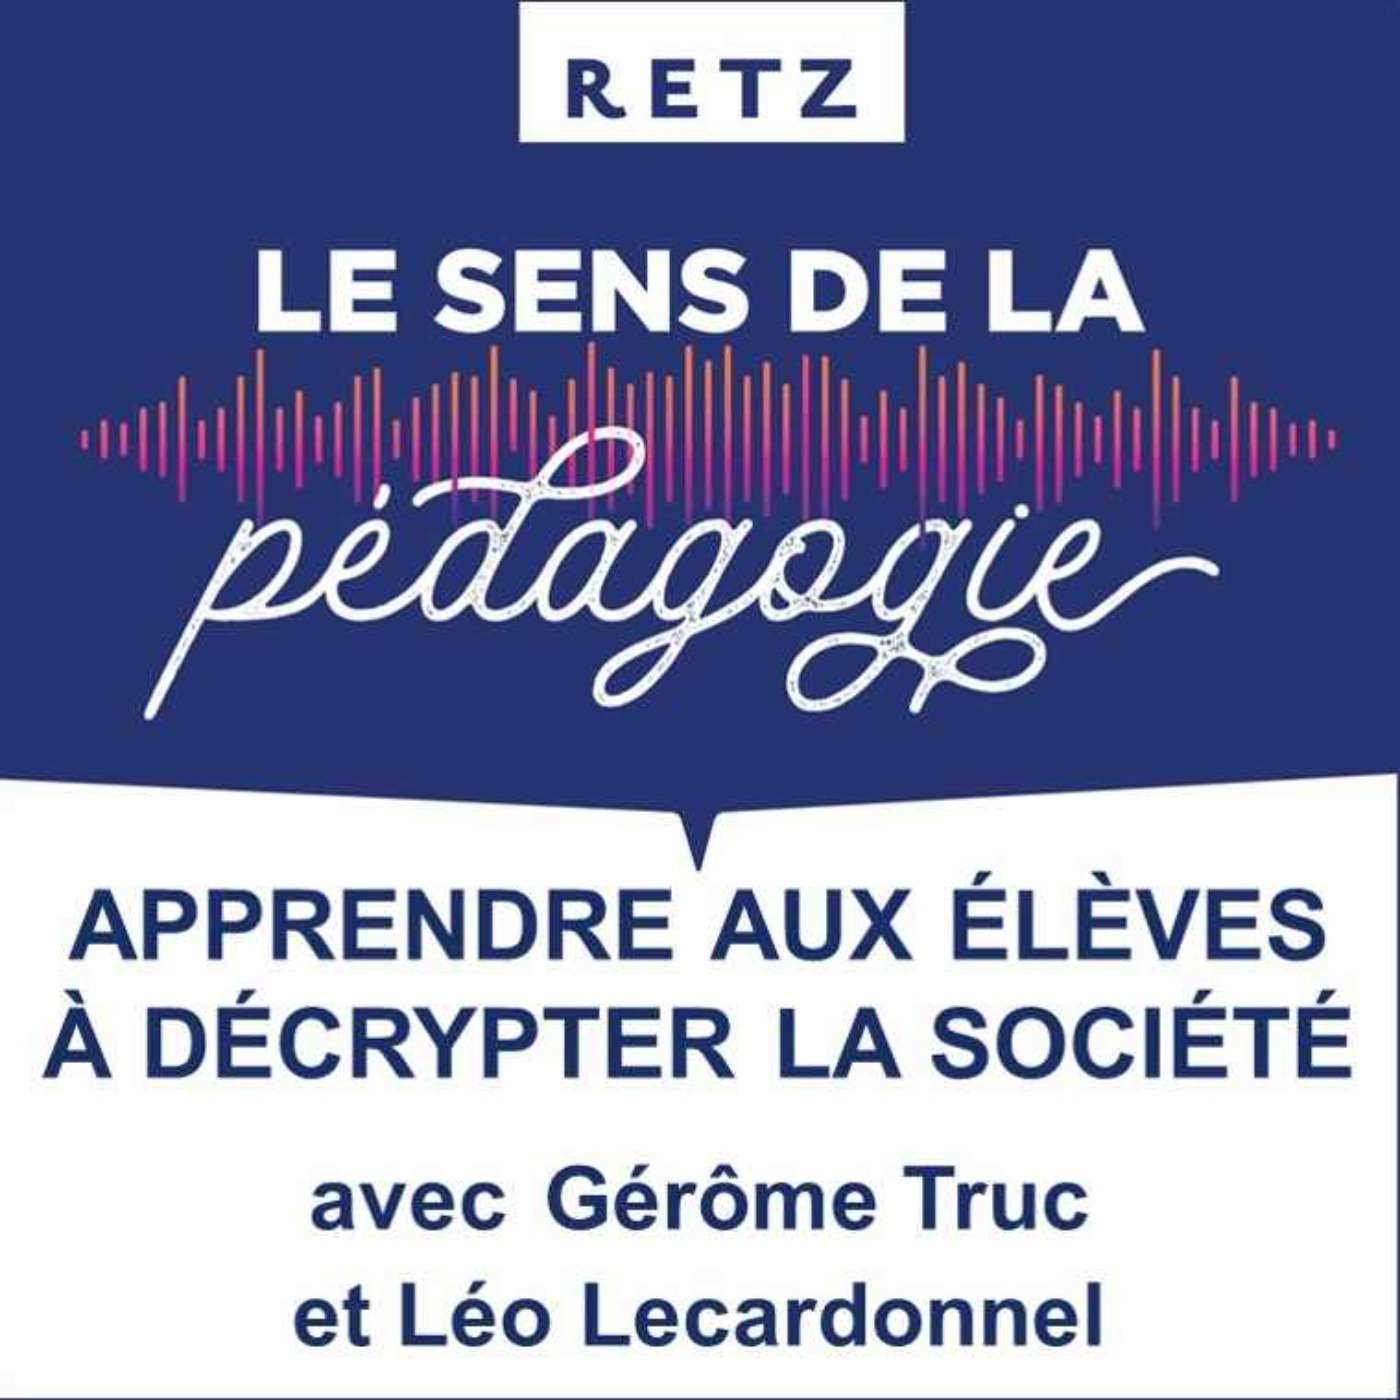 Apprendre aux élèves à décrypter la société (Léo Lecardonnel et Gérôme Truc) - #05